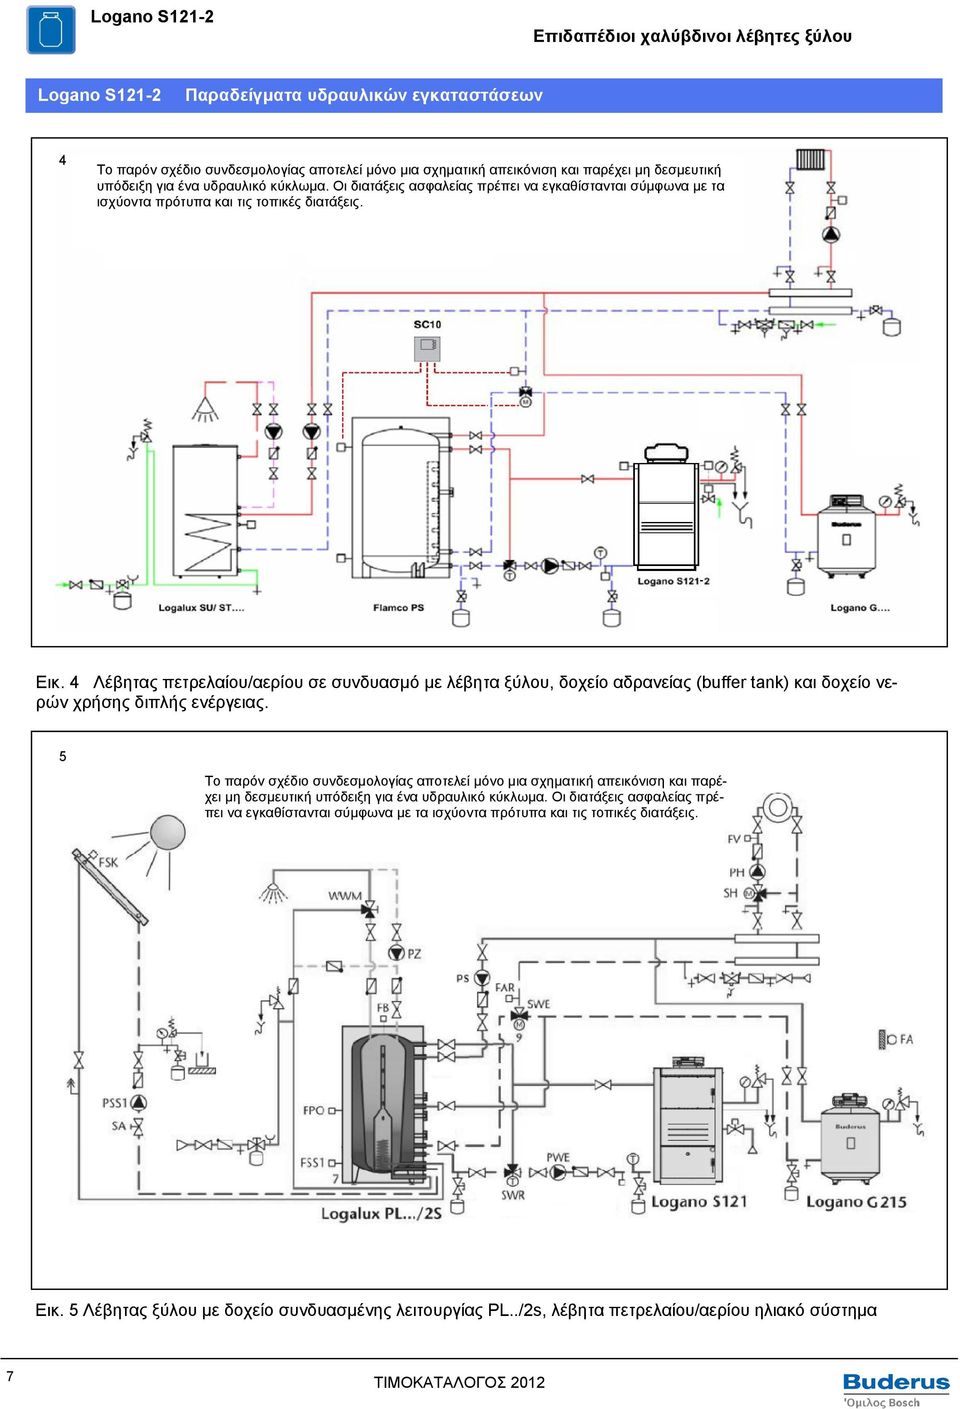 4 Λέβητας πετρελαίου/αερίου σε συνδυασμό με λέβητα ξύλου, δοχείο αδρανείας (buffer tank) και δοχείο νερών χρήσης διπλής ενέργειας.